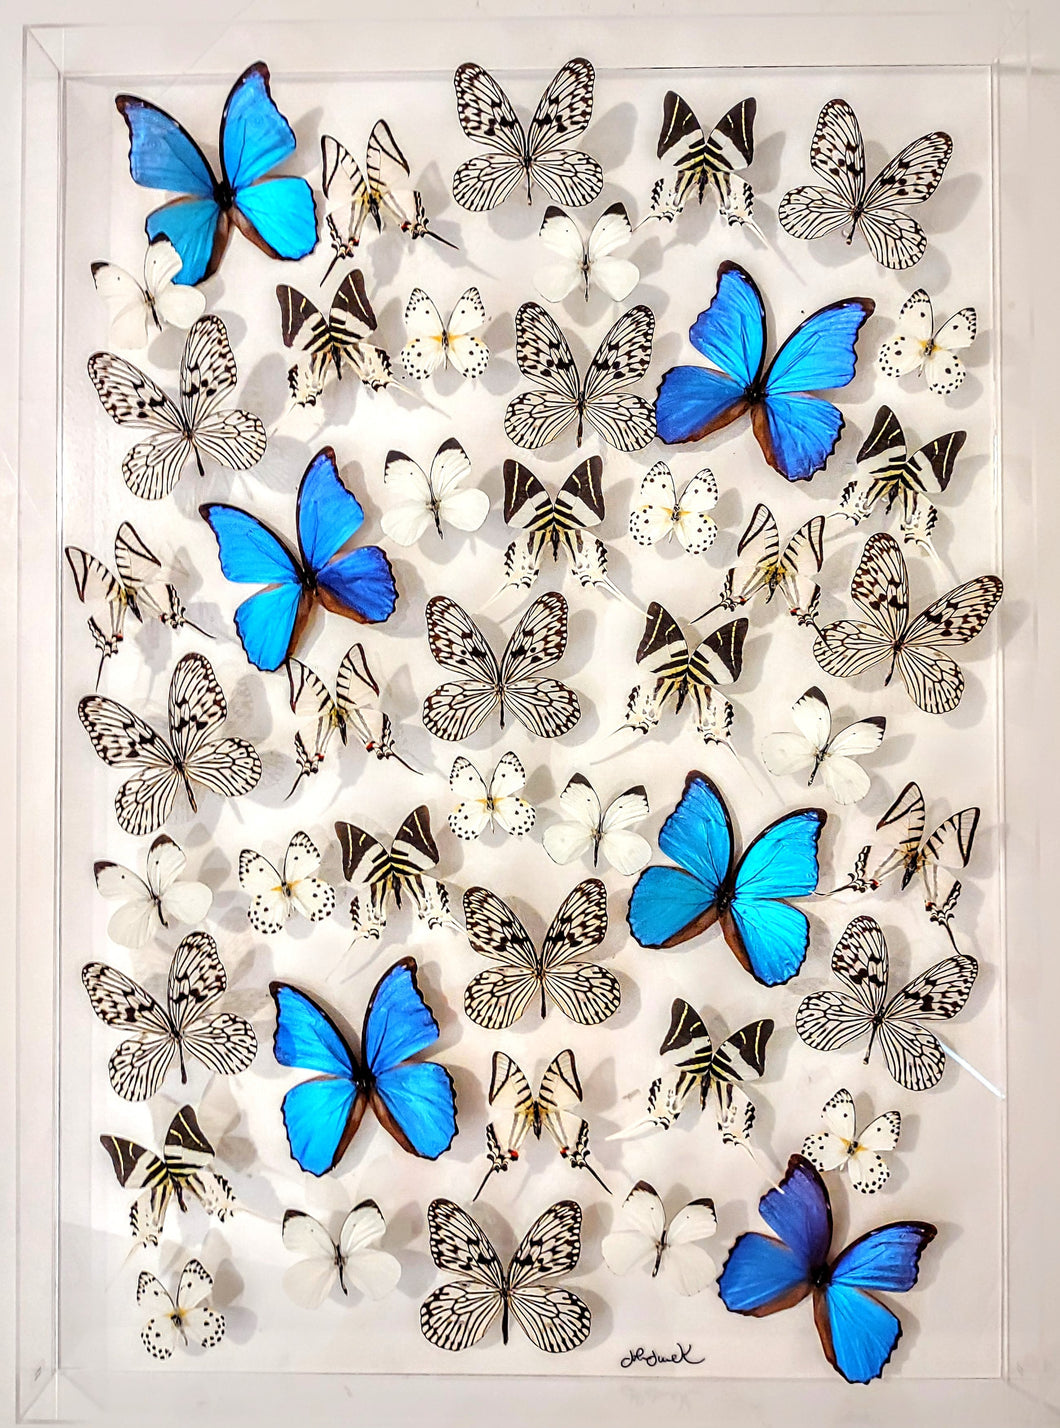 26x36 mounted butterflies  preserved butterflies, butterfly, butterfly collection butterfly displays, framed butterfly, butterfly art